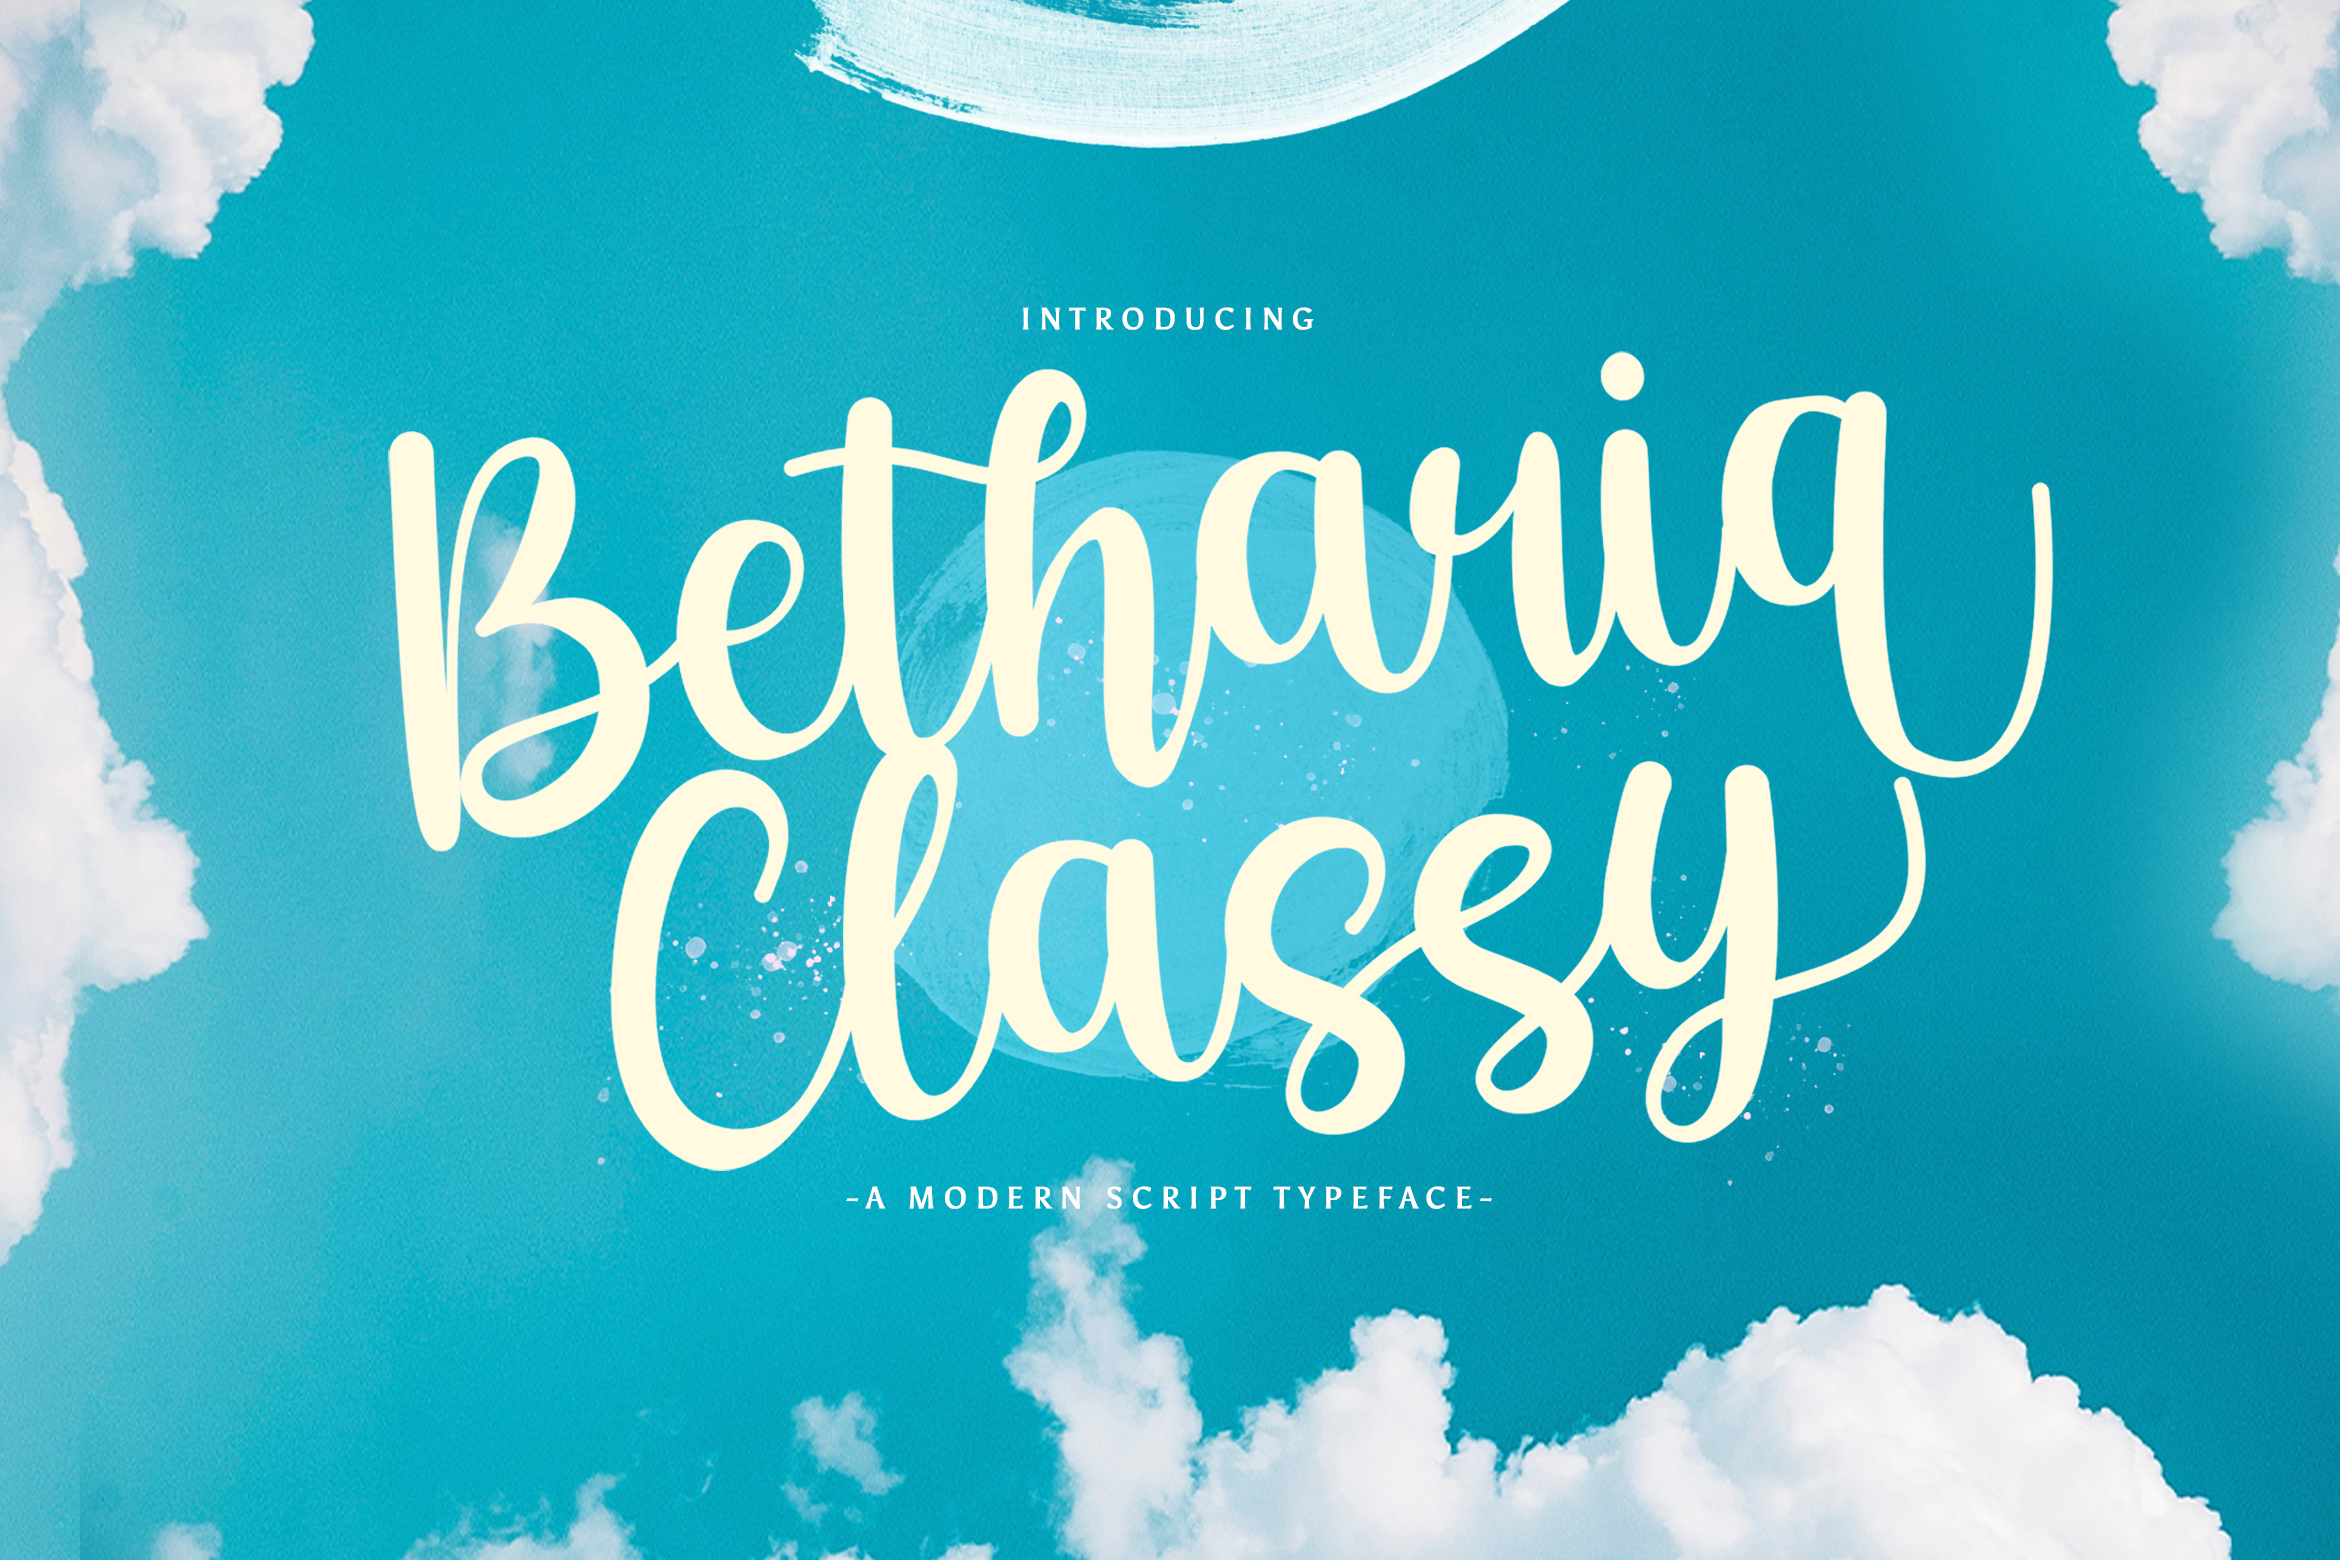 Betharia Classy